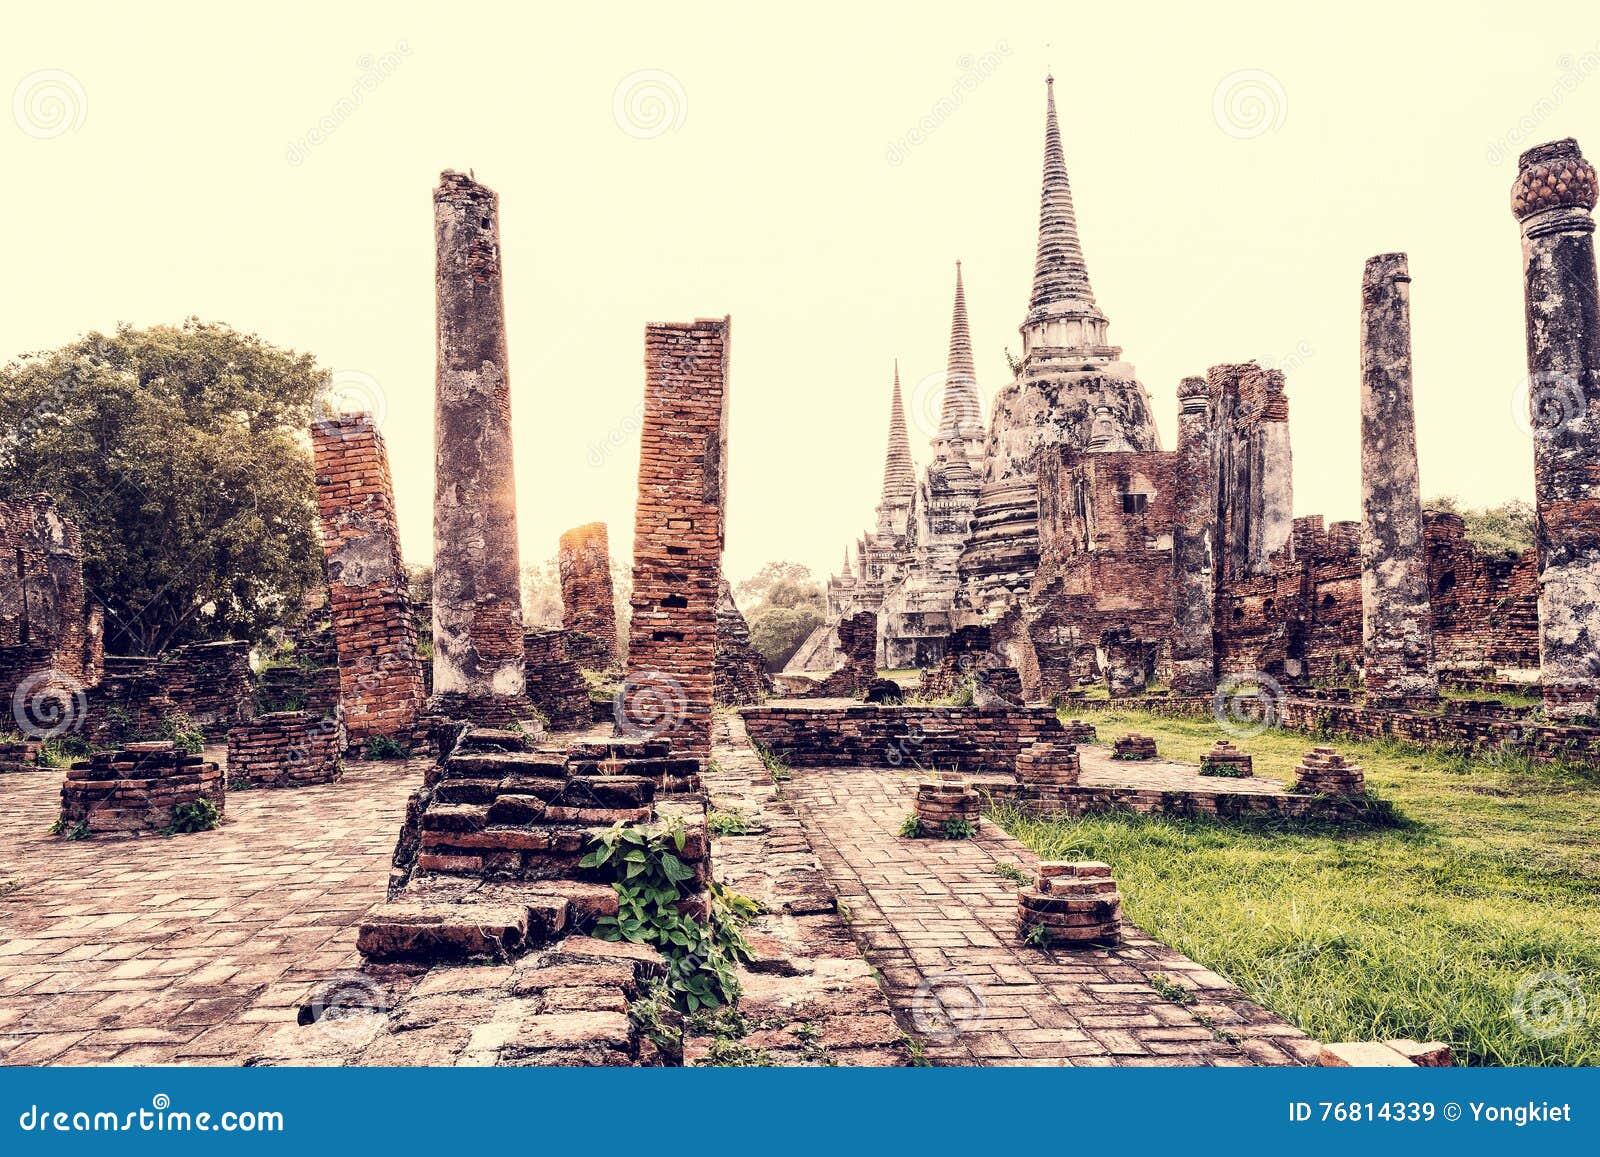 Εκλεκτής ποιότητας Si Sanphet, Ταϊλάνδη Wat Phra. Εκλεκτής ποιότητας καταστροφές ύφους και αρχαία αρχιτεκτονική παγοδών Wat Phra διάσημης έλξης ναών Si Sanphet της παλαιάς κατά τη διάρκεια του ηλιοβασιλέματος στο ιστορικό πάρκο Si Ayutthaya Phra Nakhon στην επαρχία Ayutthaya, Ταϊλάνδη